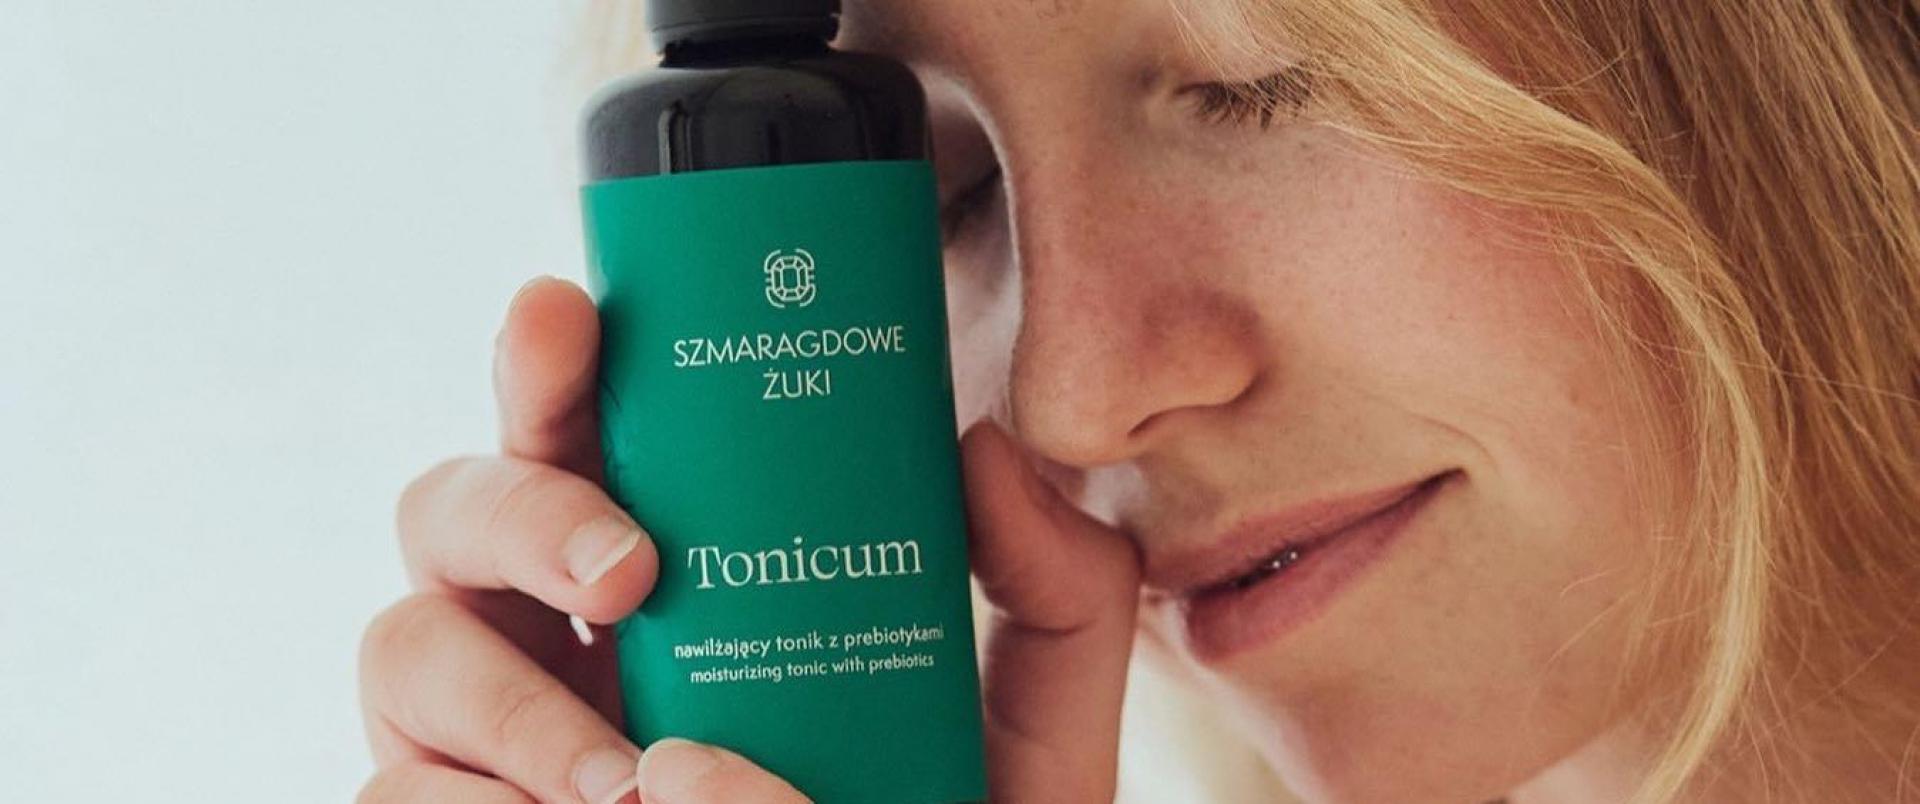 Tonicum - nowość marki Szmaragdowe Żuki dla poprawy mikrobiomu skóry